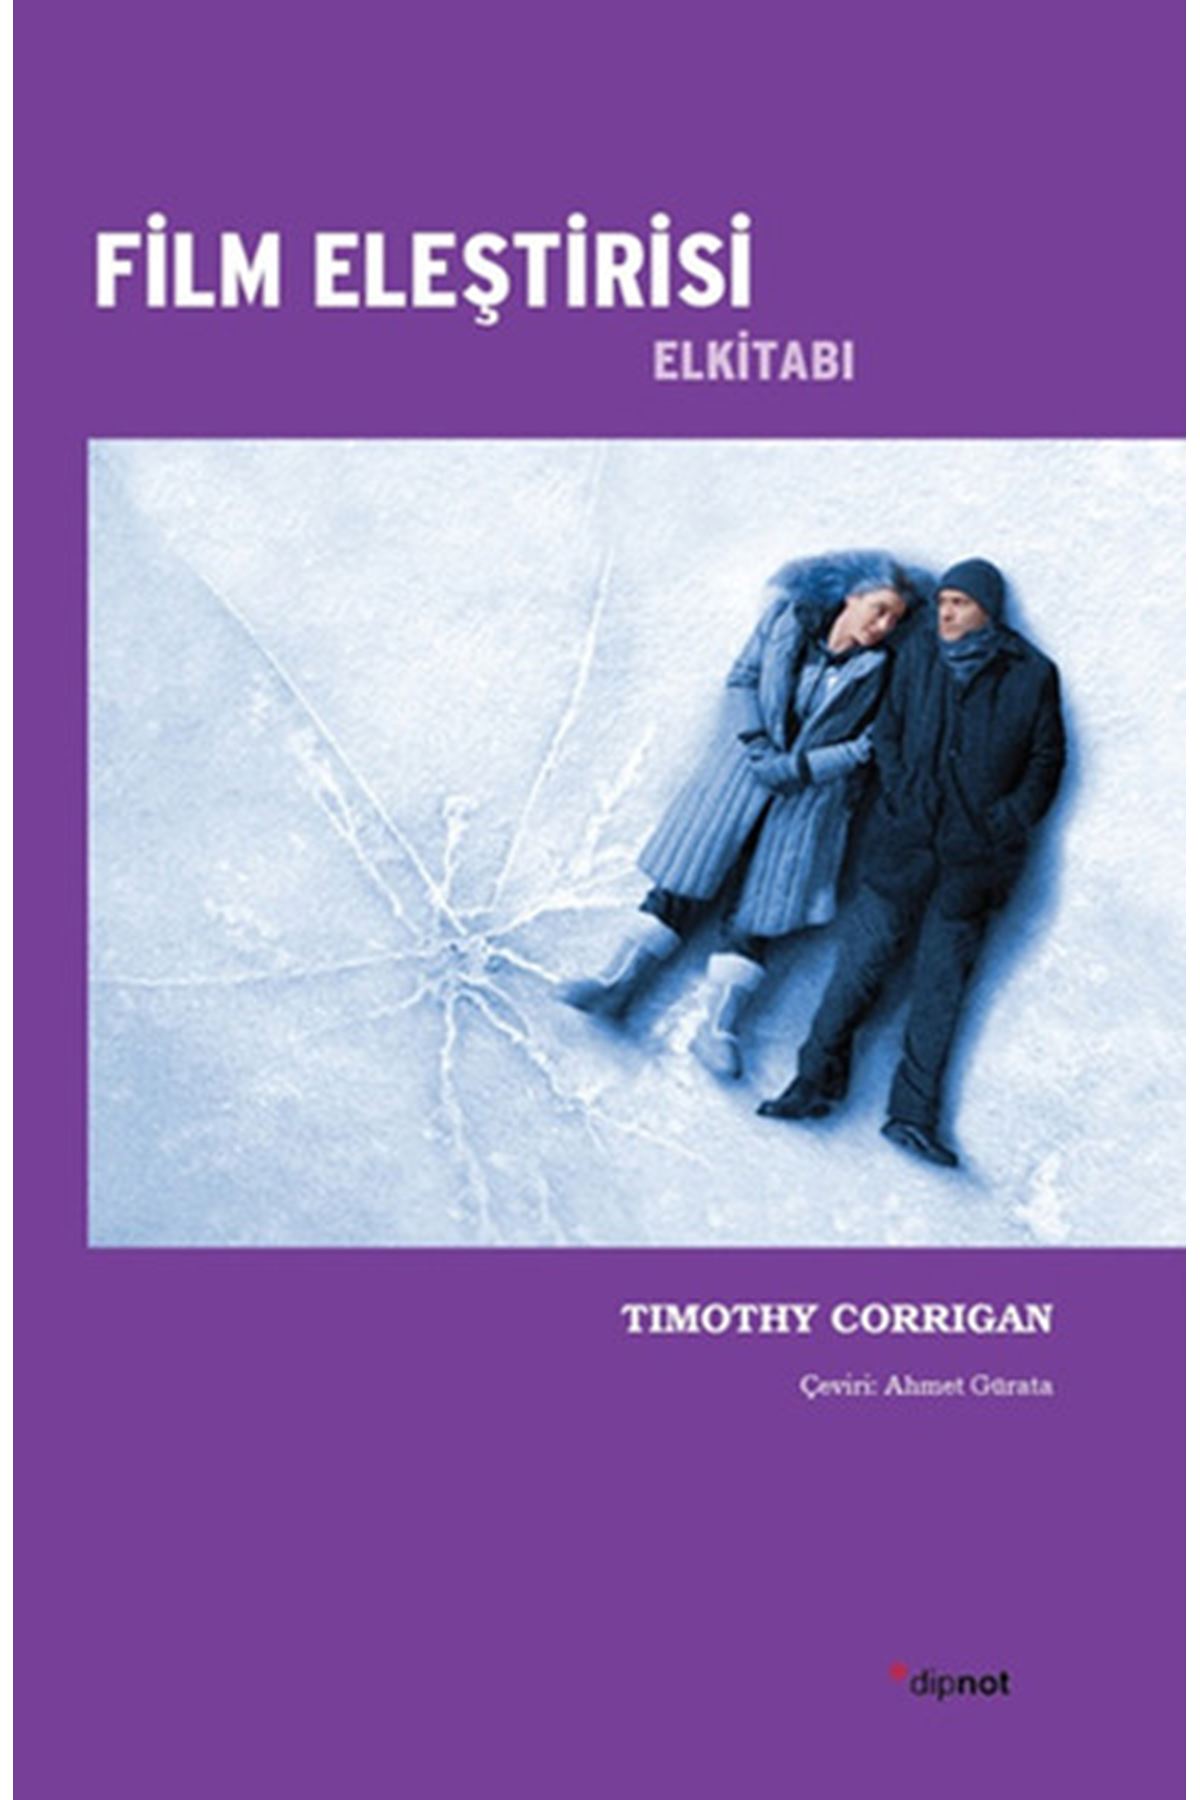 Timothy Corrıgan - Film Eleştirisi El Kitabı